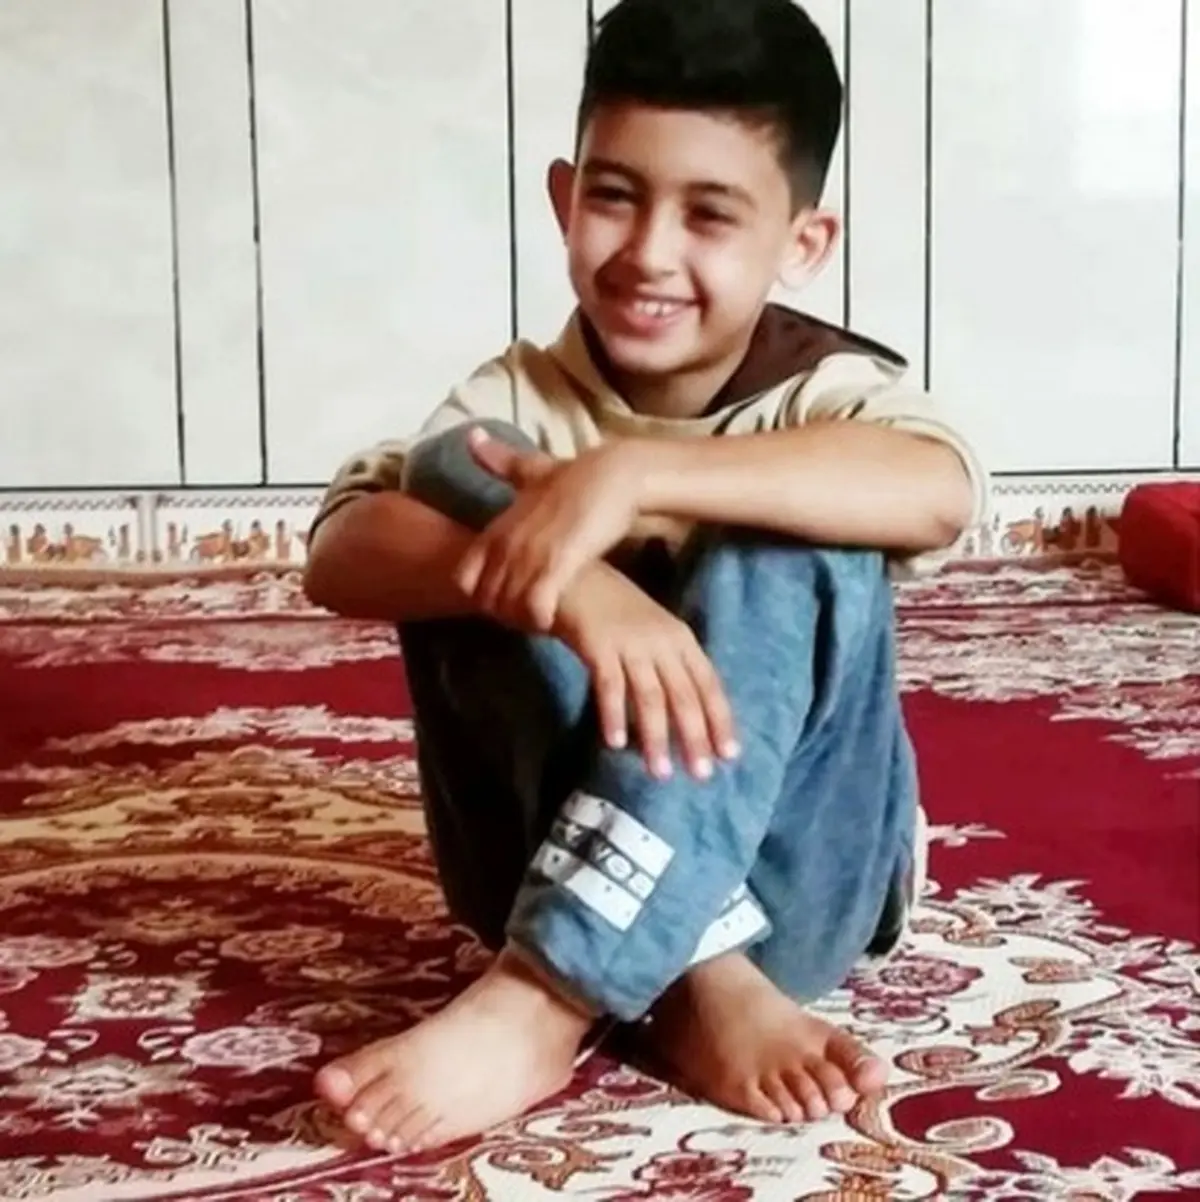 مرگ پسر 10 ساله با سقوط به کانال آب در آبادان